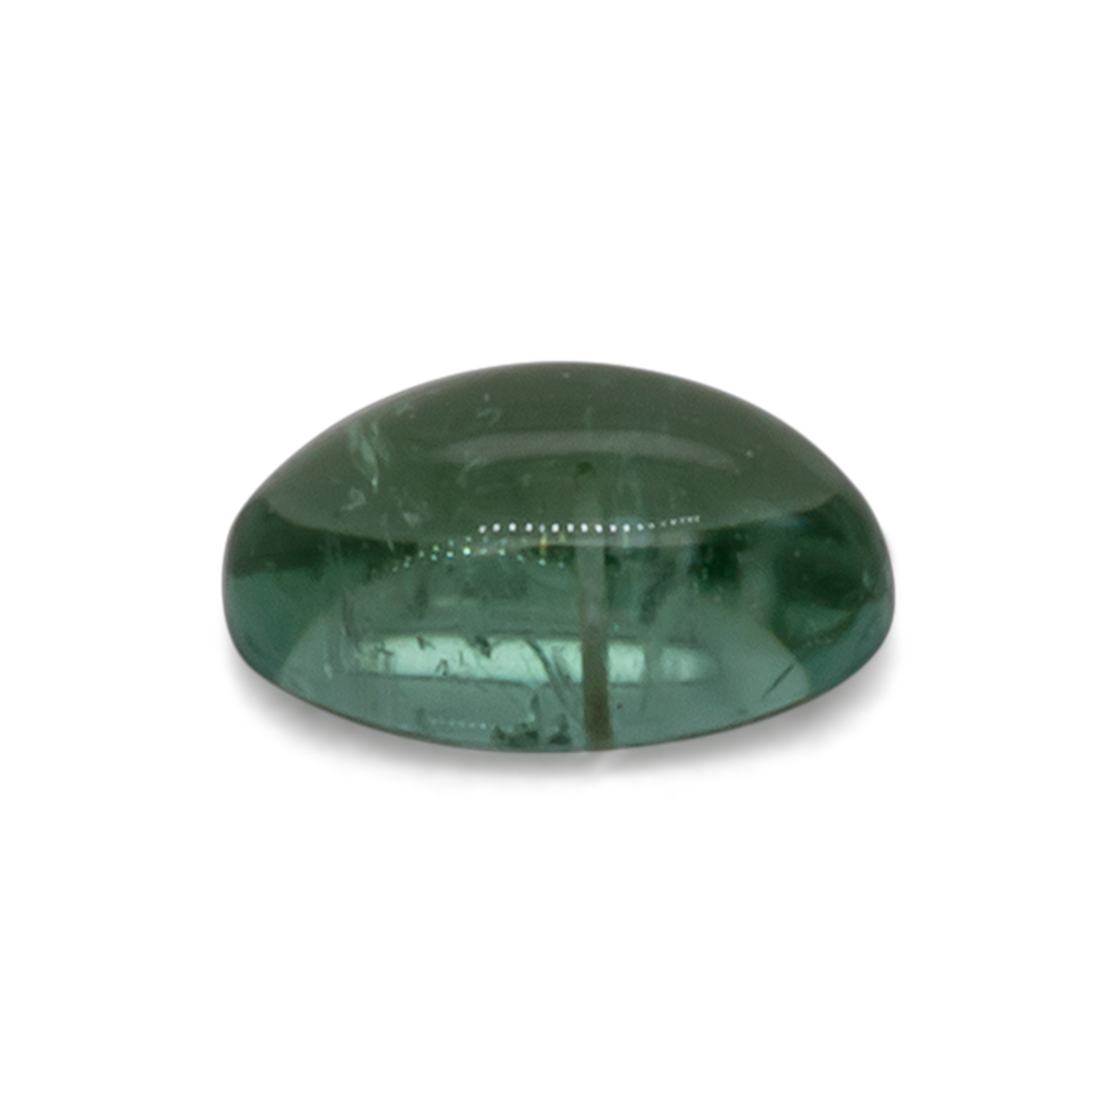 Turmalin - grün, oval, 3,8x2,5 mm, 0,13 cts, Nr. TR99386